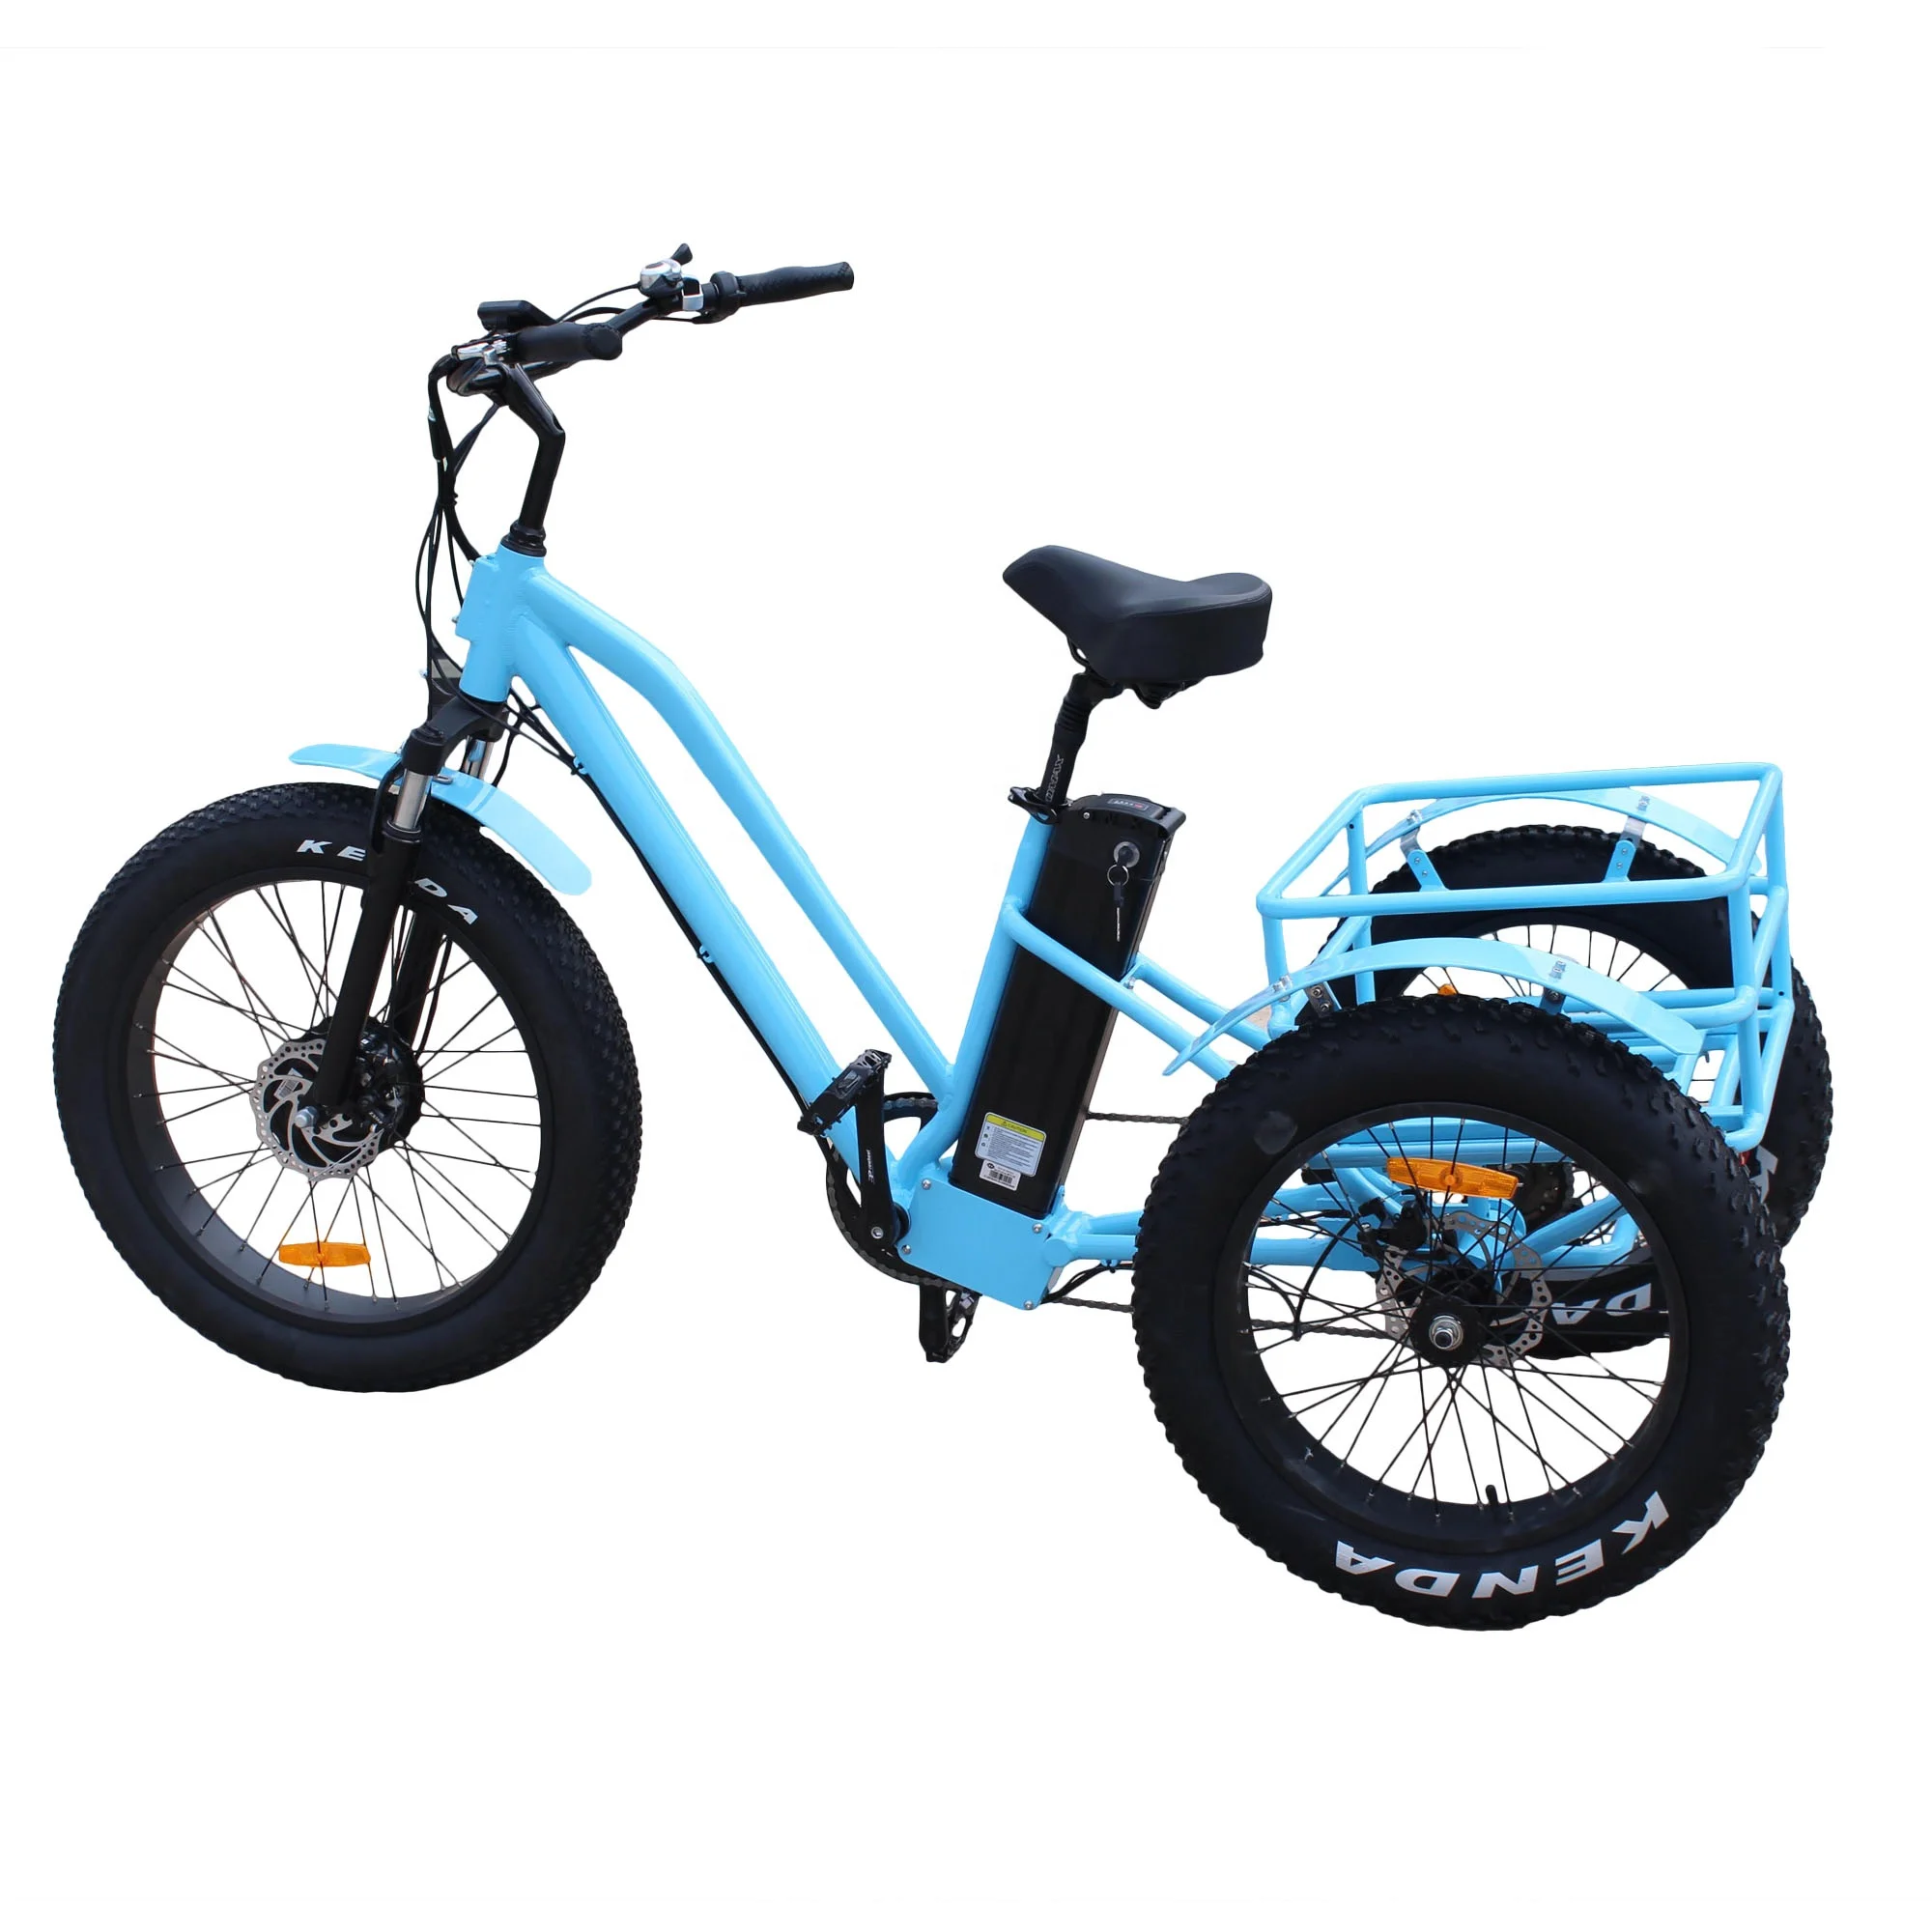 Adulto grande roda triciclo/triciclo elétrico bicicleta Trike adulto/triciclo motorizado de carga